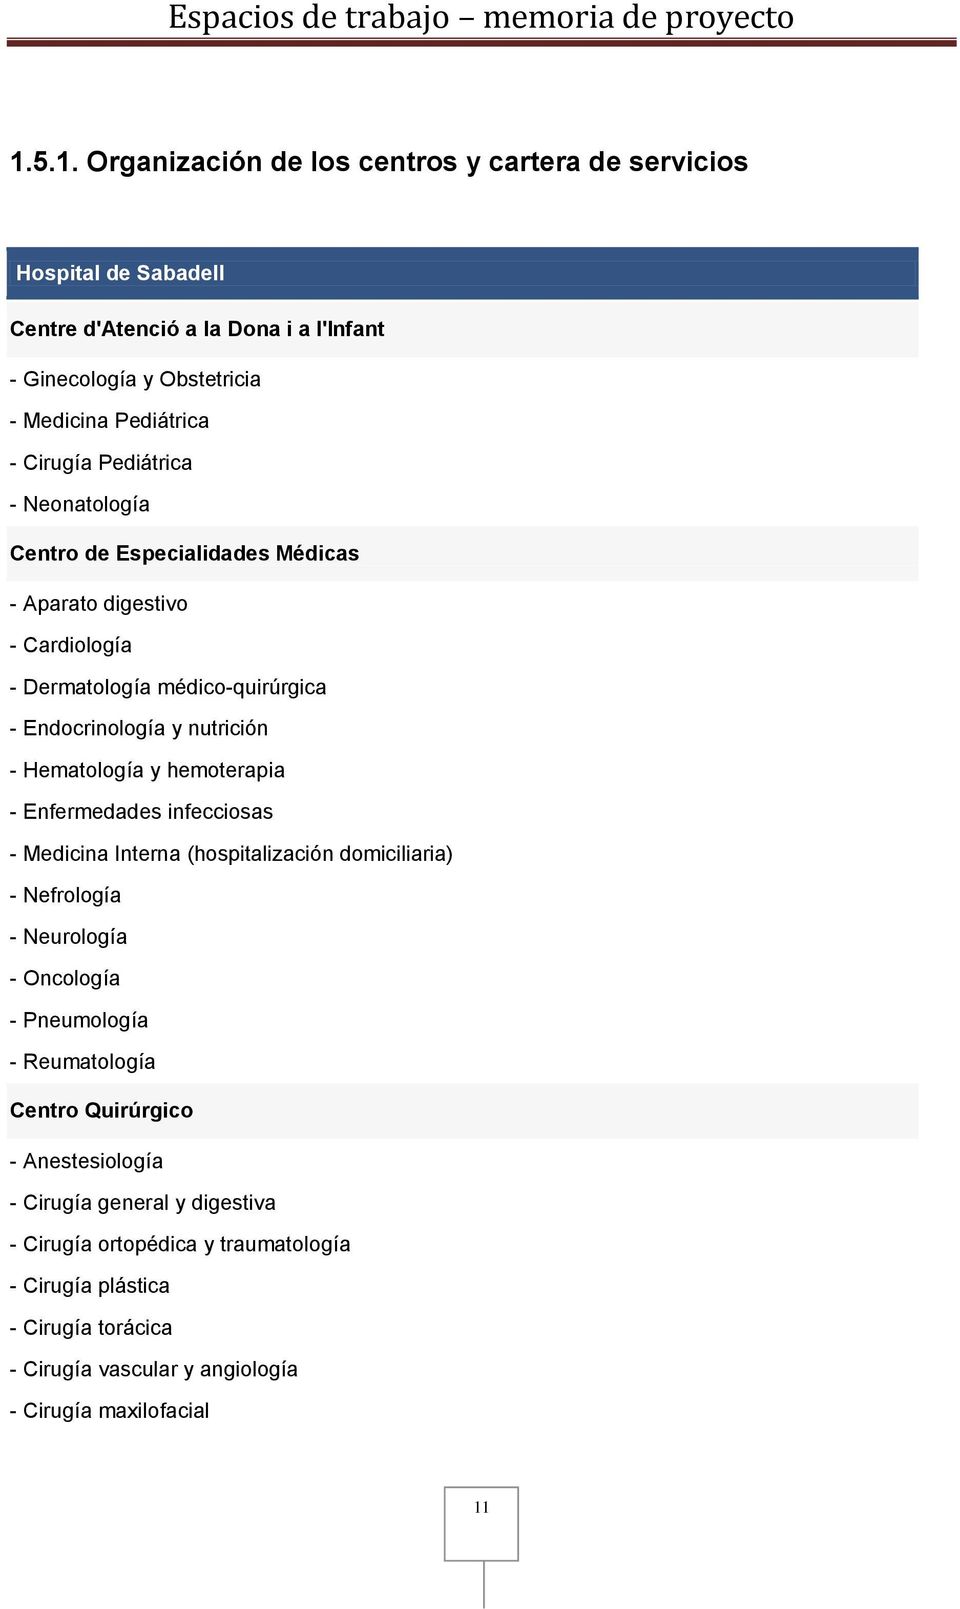 Hematología y hemoterapia - Enfermedades infecciosas - Medicina Interna (hospitalización domiciliaria) - Nefrología - Neurología - Oncología - Pneumología - Reumatología